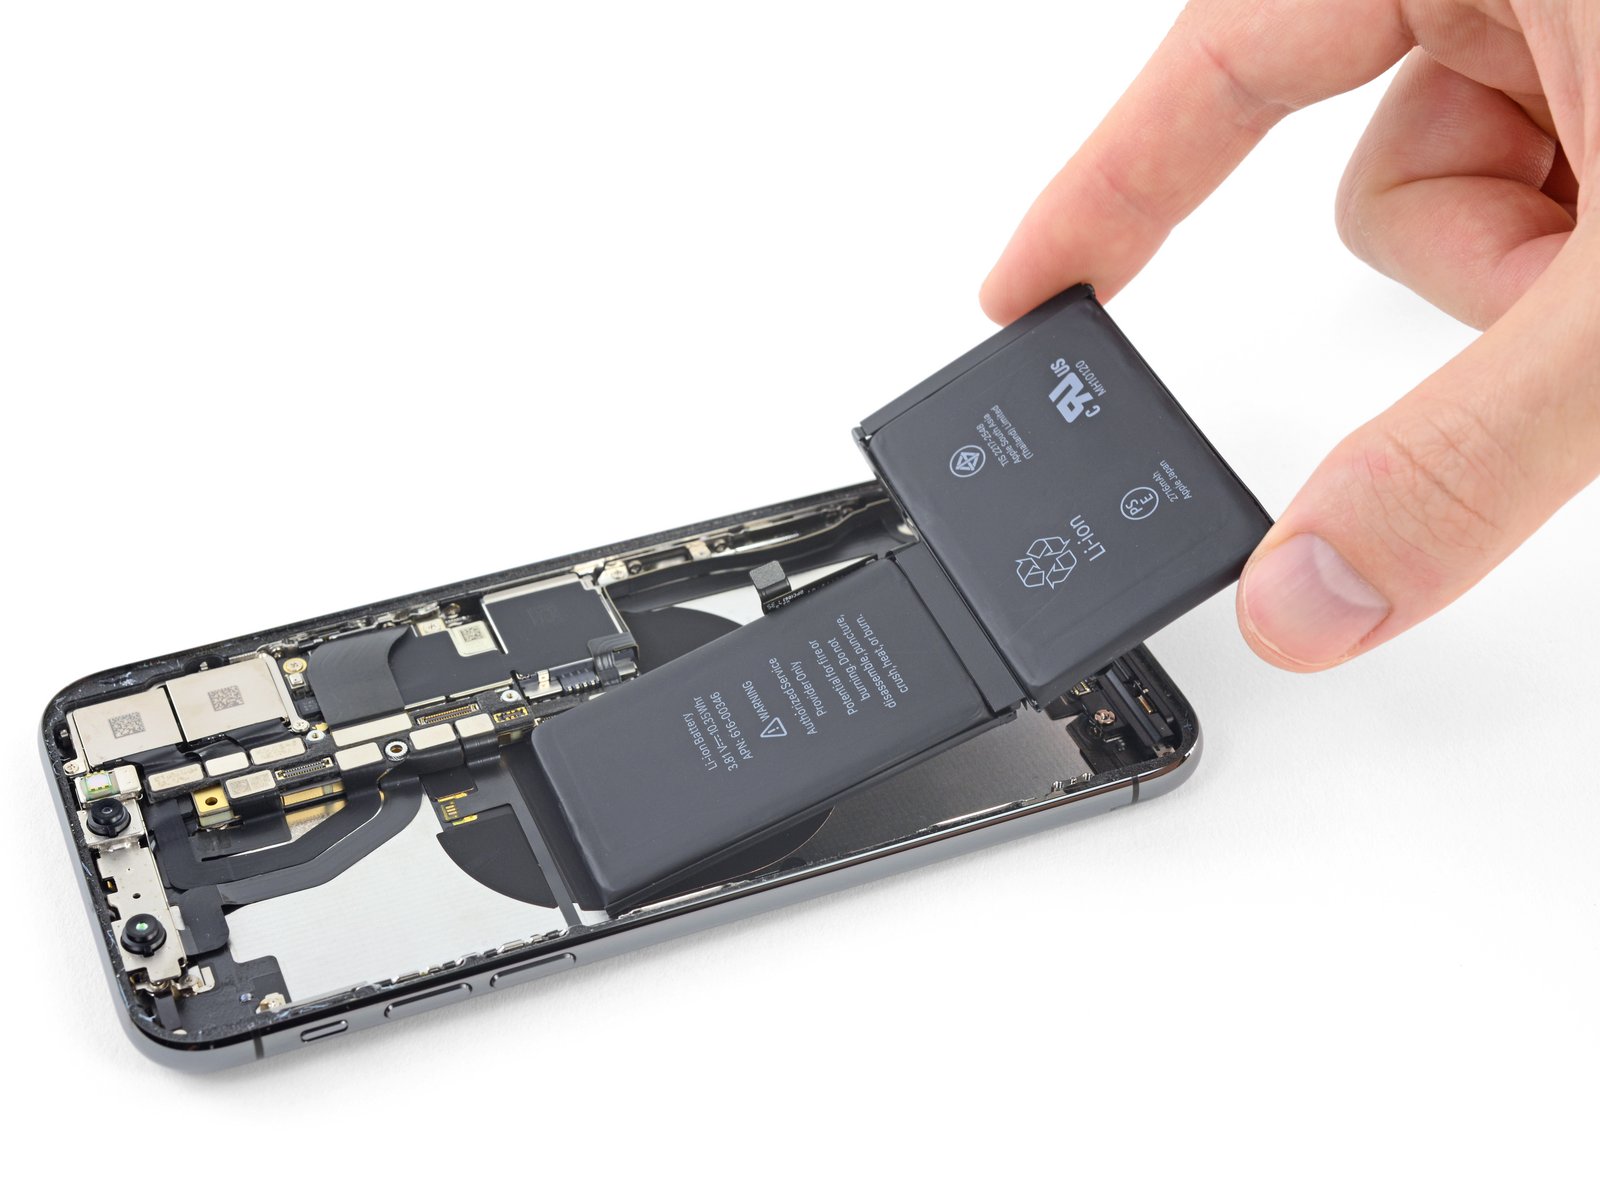 Chi phí thay pin cho các dòng sản phẩm của Apple ngày càng đắt đỏ, khiến người dùng lo lắng.